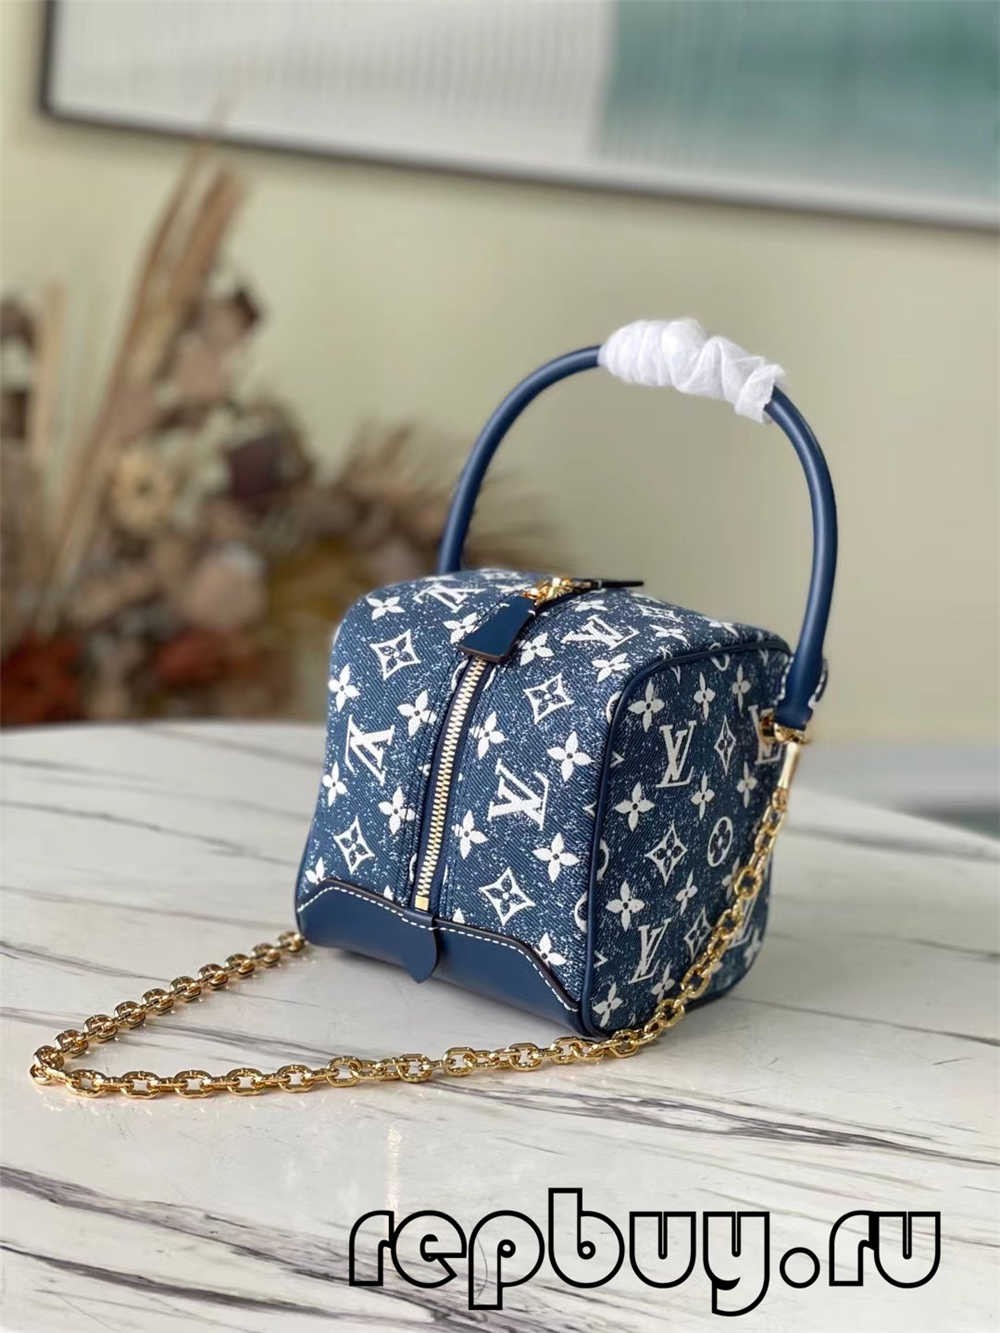 çanta kopje të cilësisë më të mirë të Louis Vuitton SQUARE (2022 më e fundit)-Dyqani në internet i çantave të rreme Louis Vuitton me cilësi më të mirë, çanta modeli kopje ru